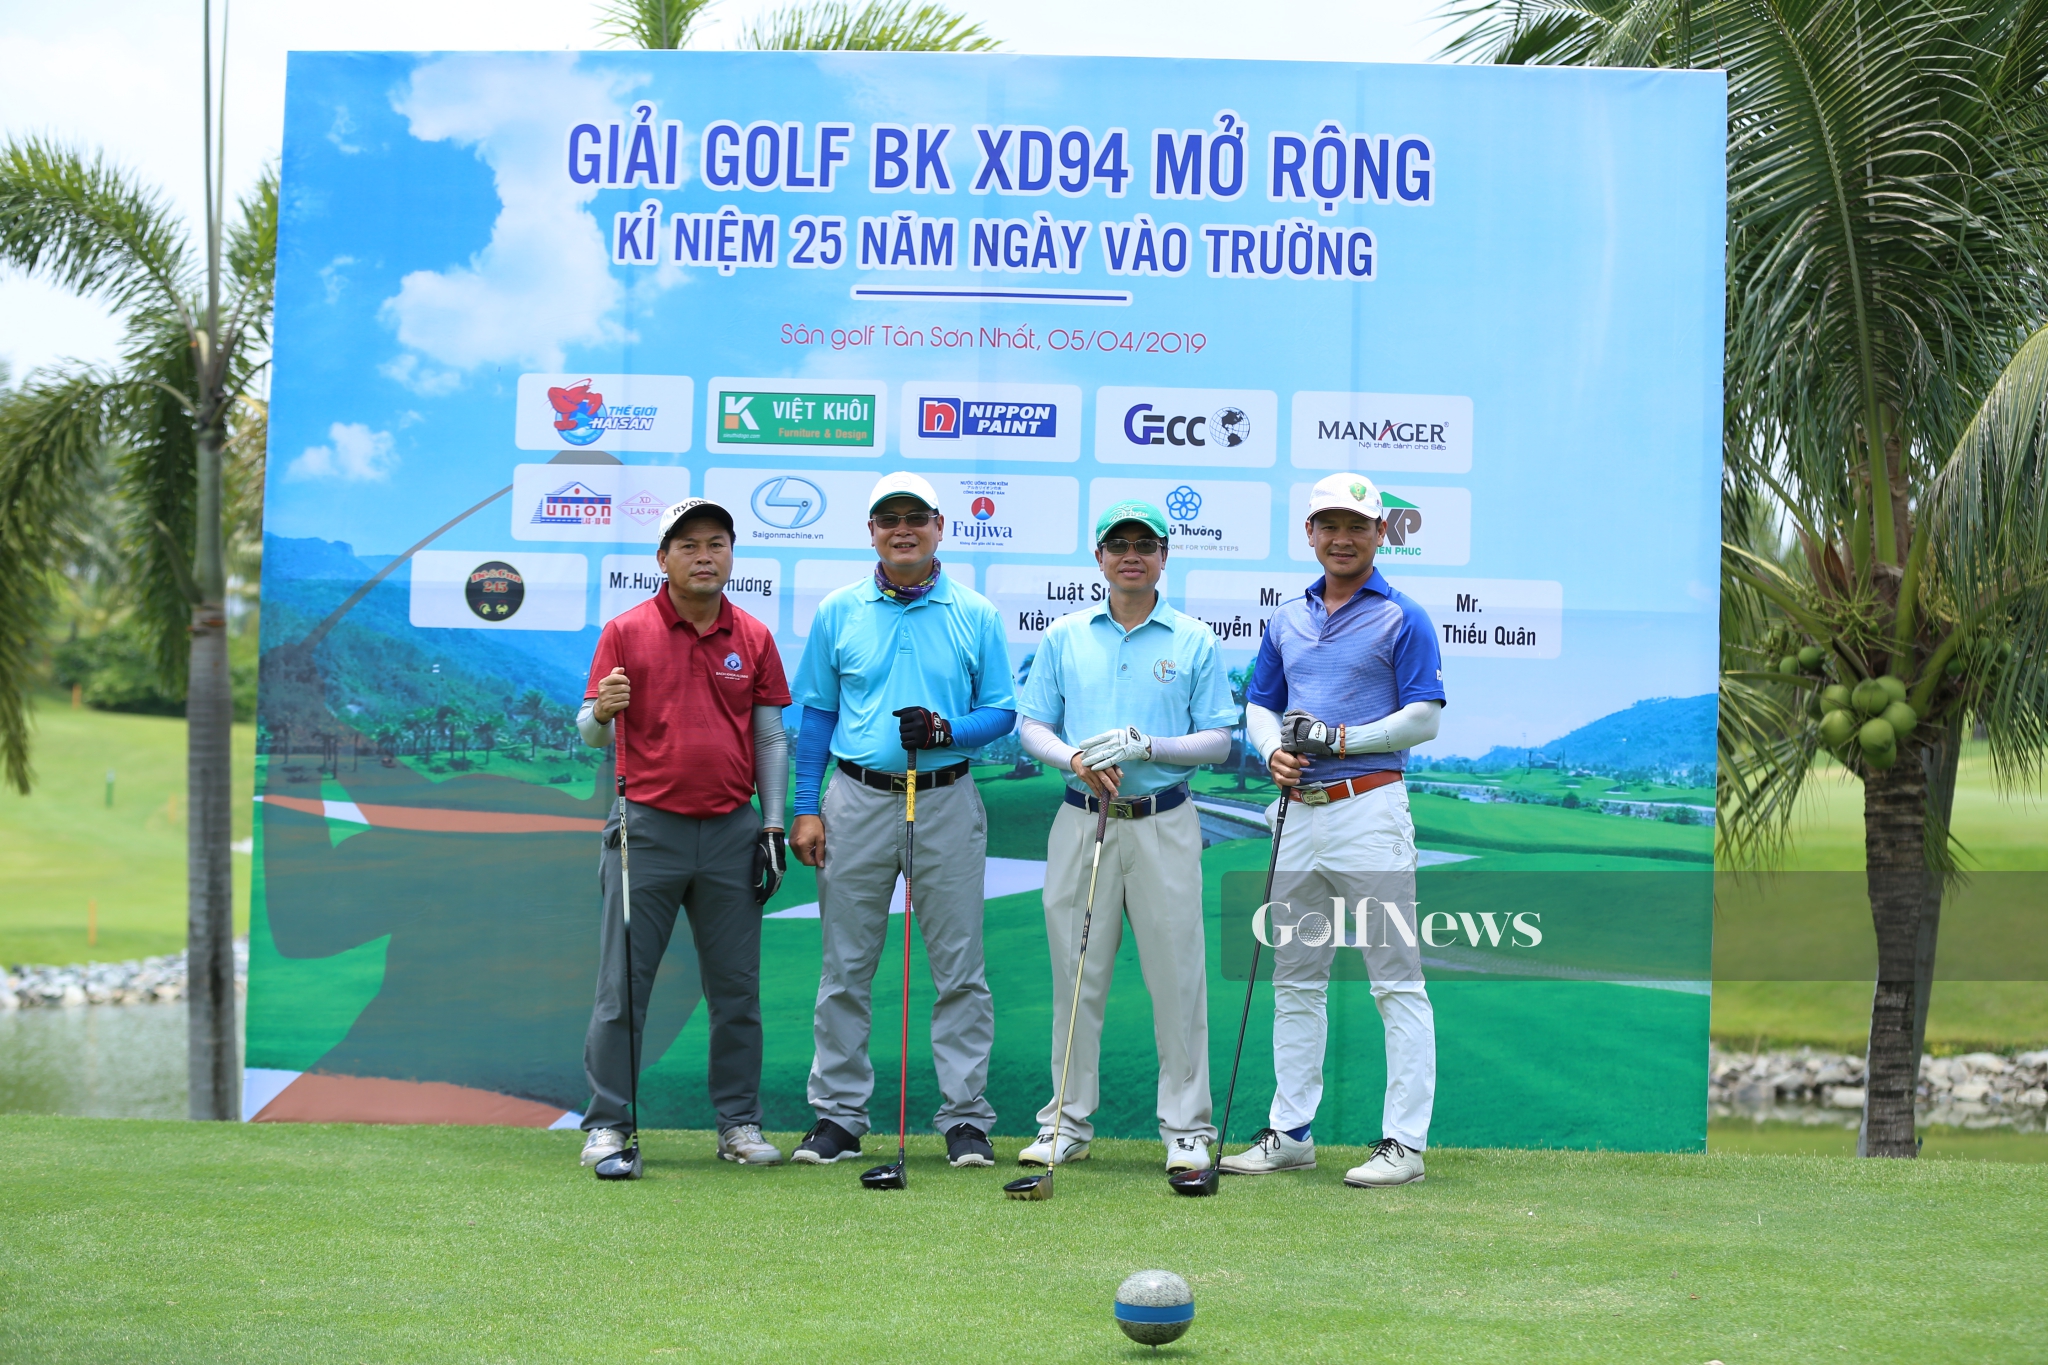 Giải Golf Bách Khoa XD94 Mở rộng tăng tình đoàn kết giữa các thành viên